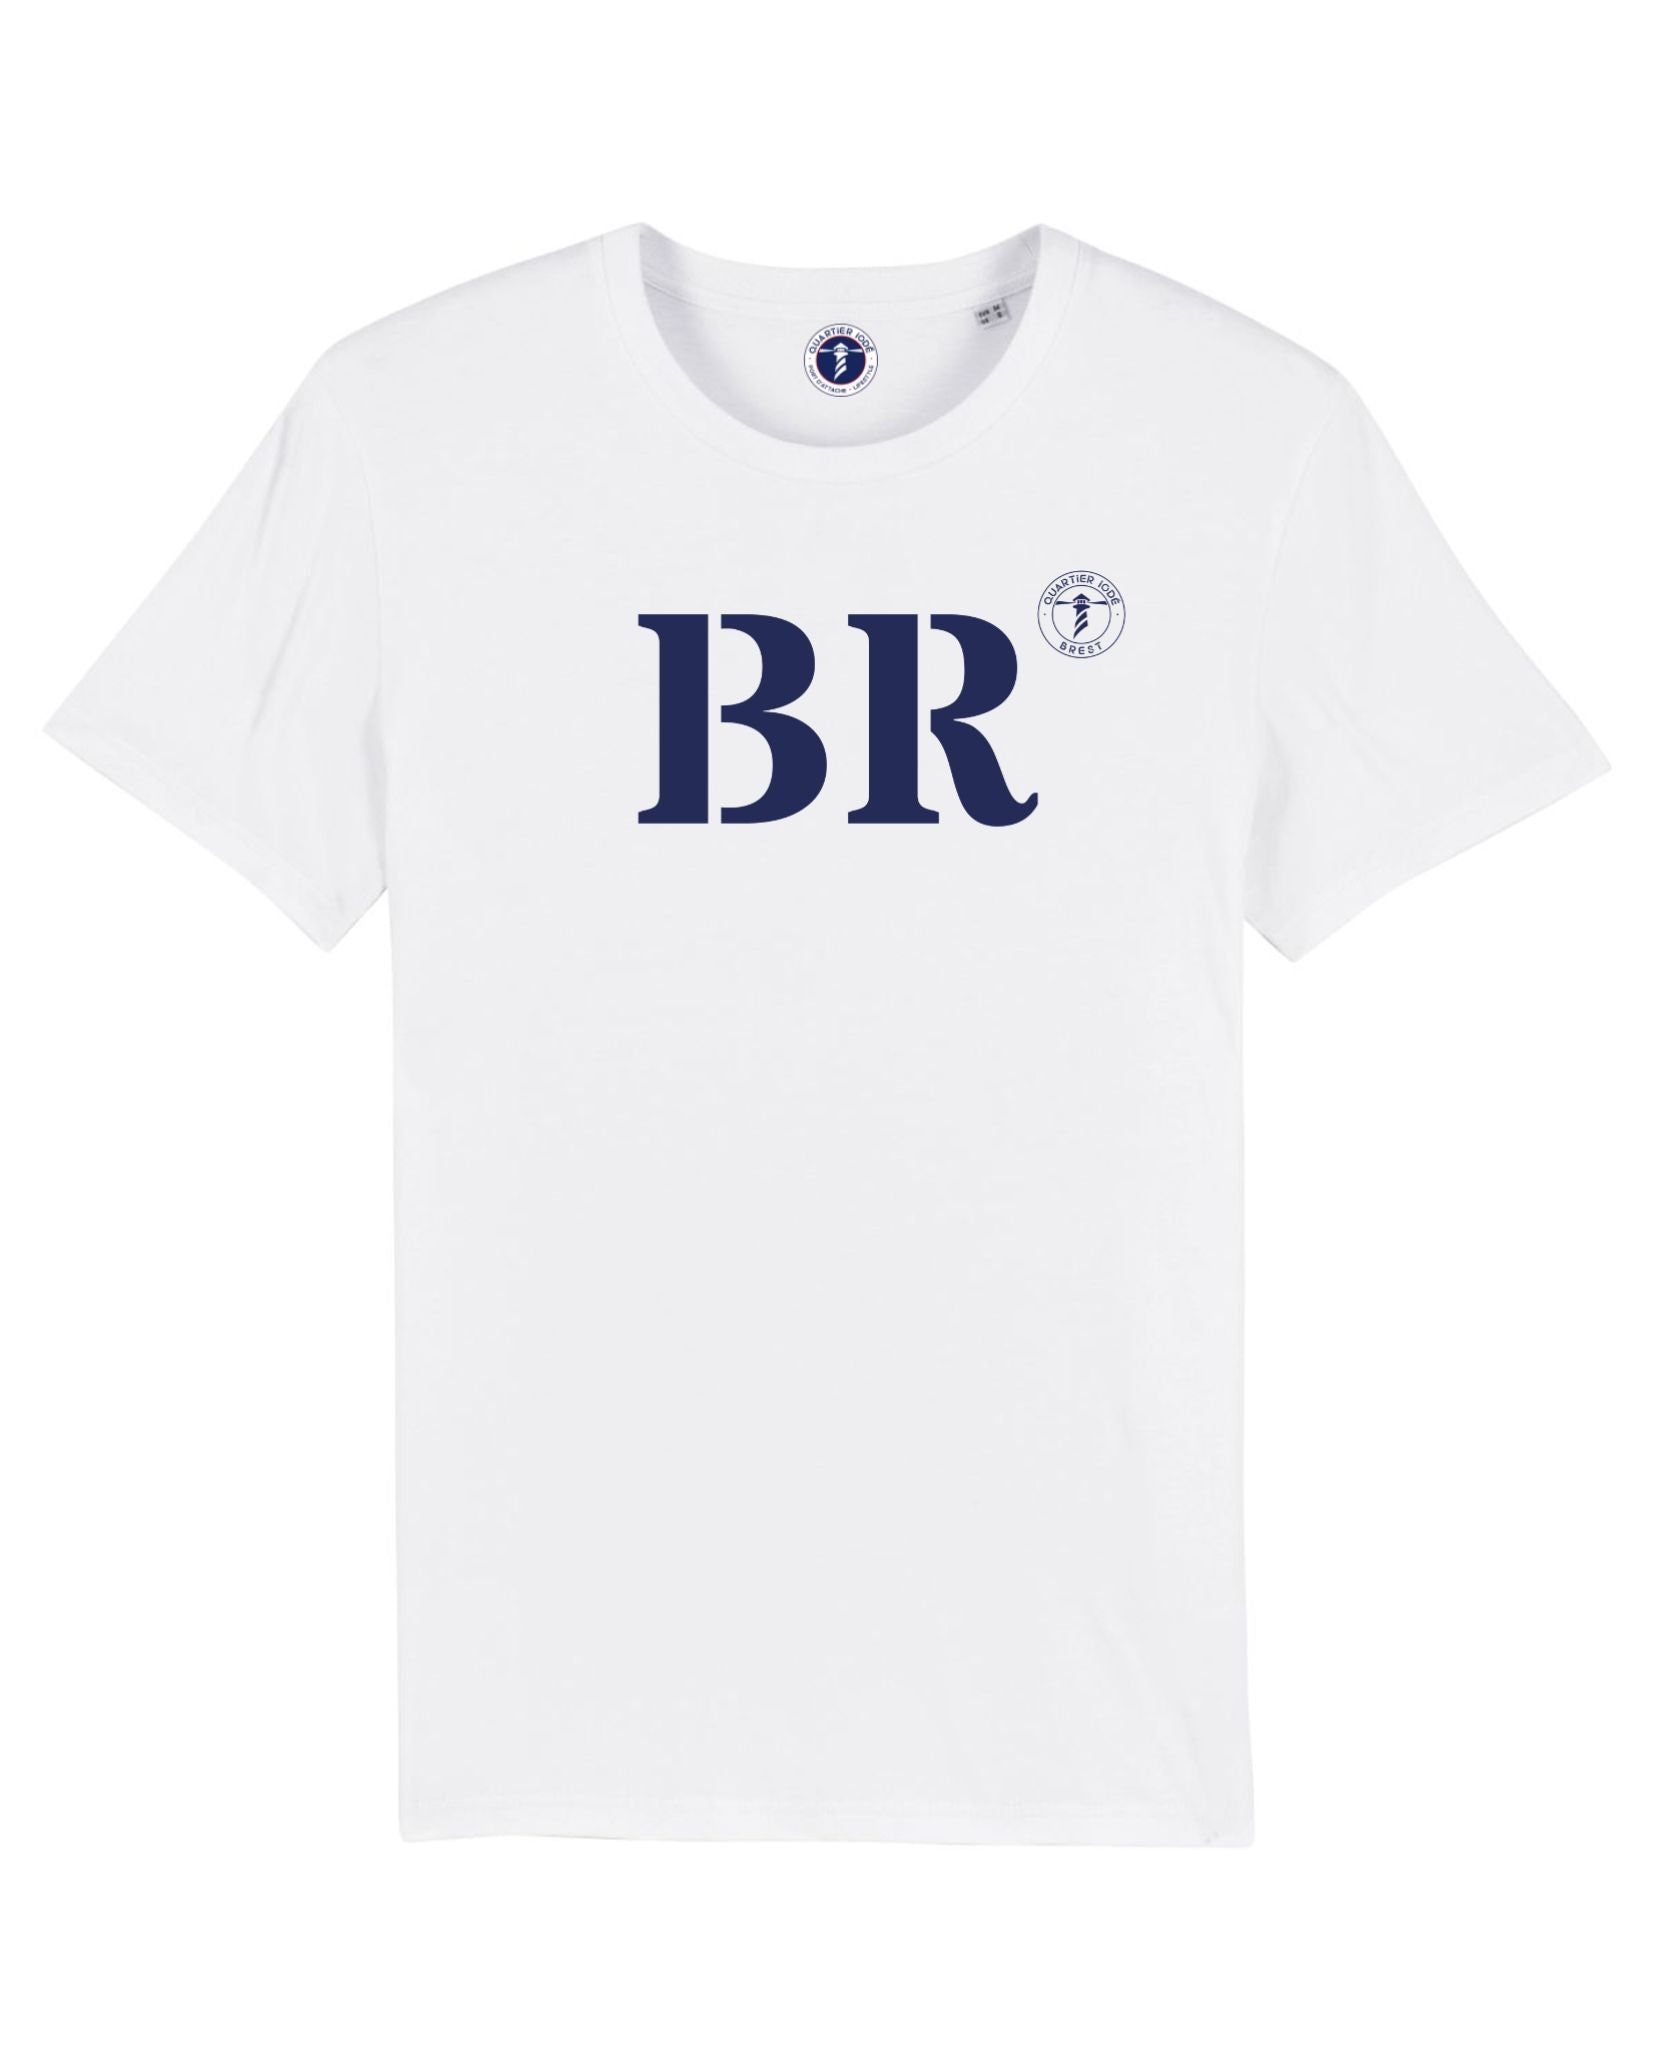 Fiers d'être de Brest ! avec le Tshirt blanc en coton de la marque bretonne Quartier Iodé. un cadeau pour hommes ou femmes. 